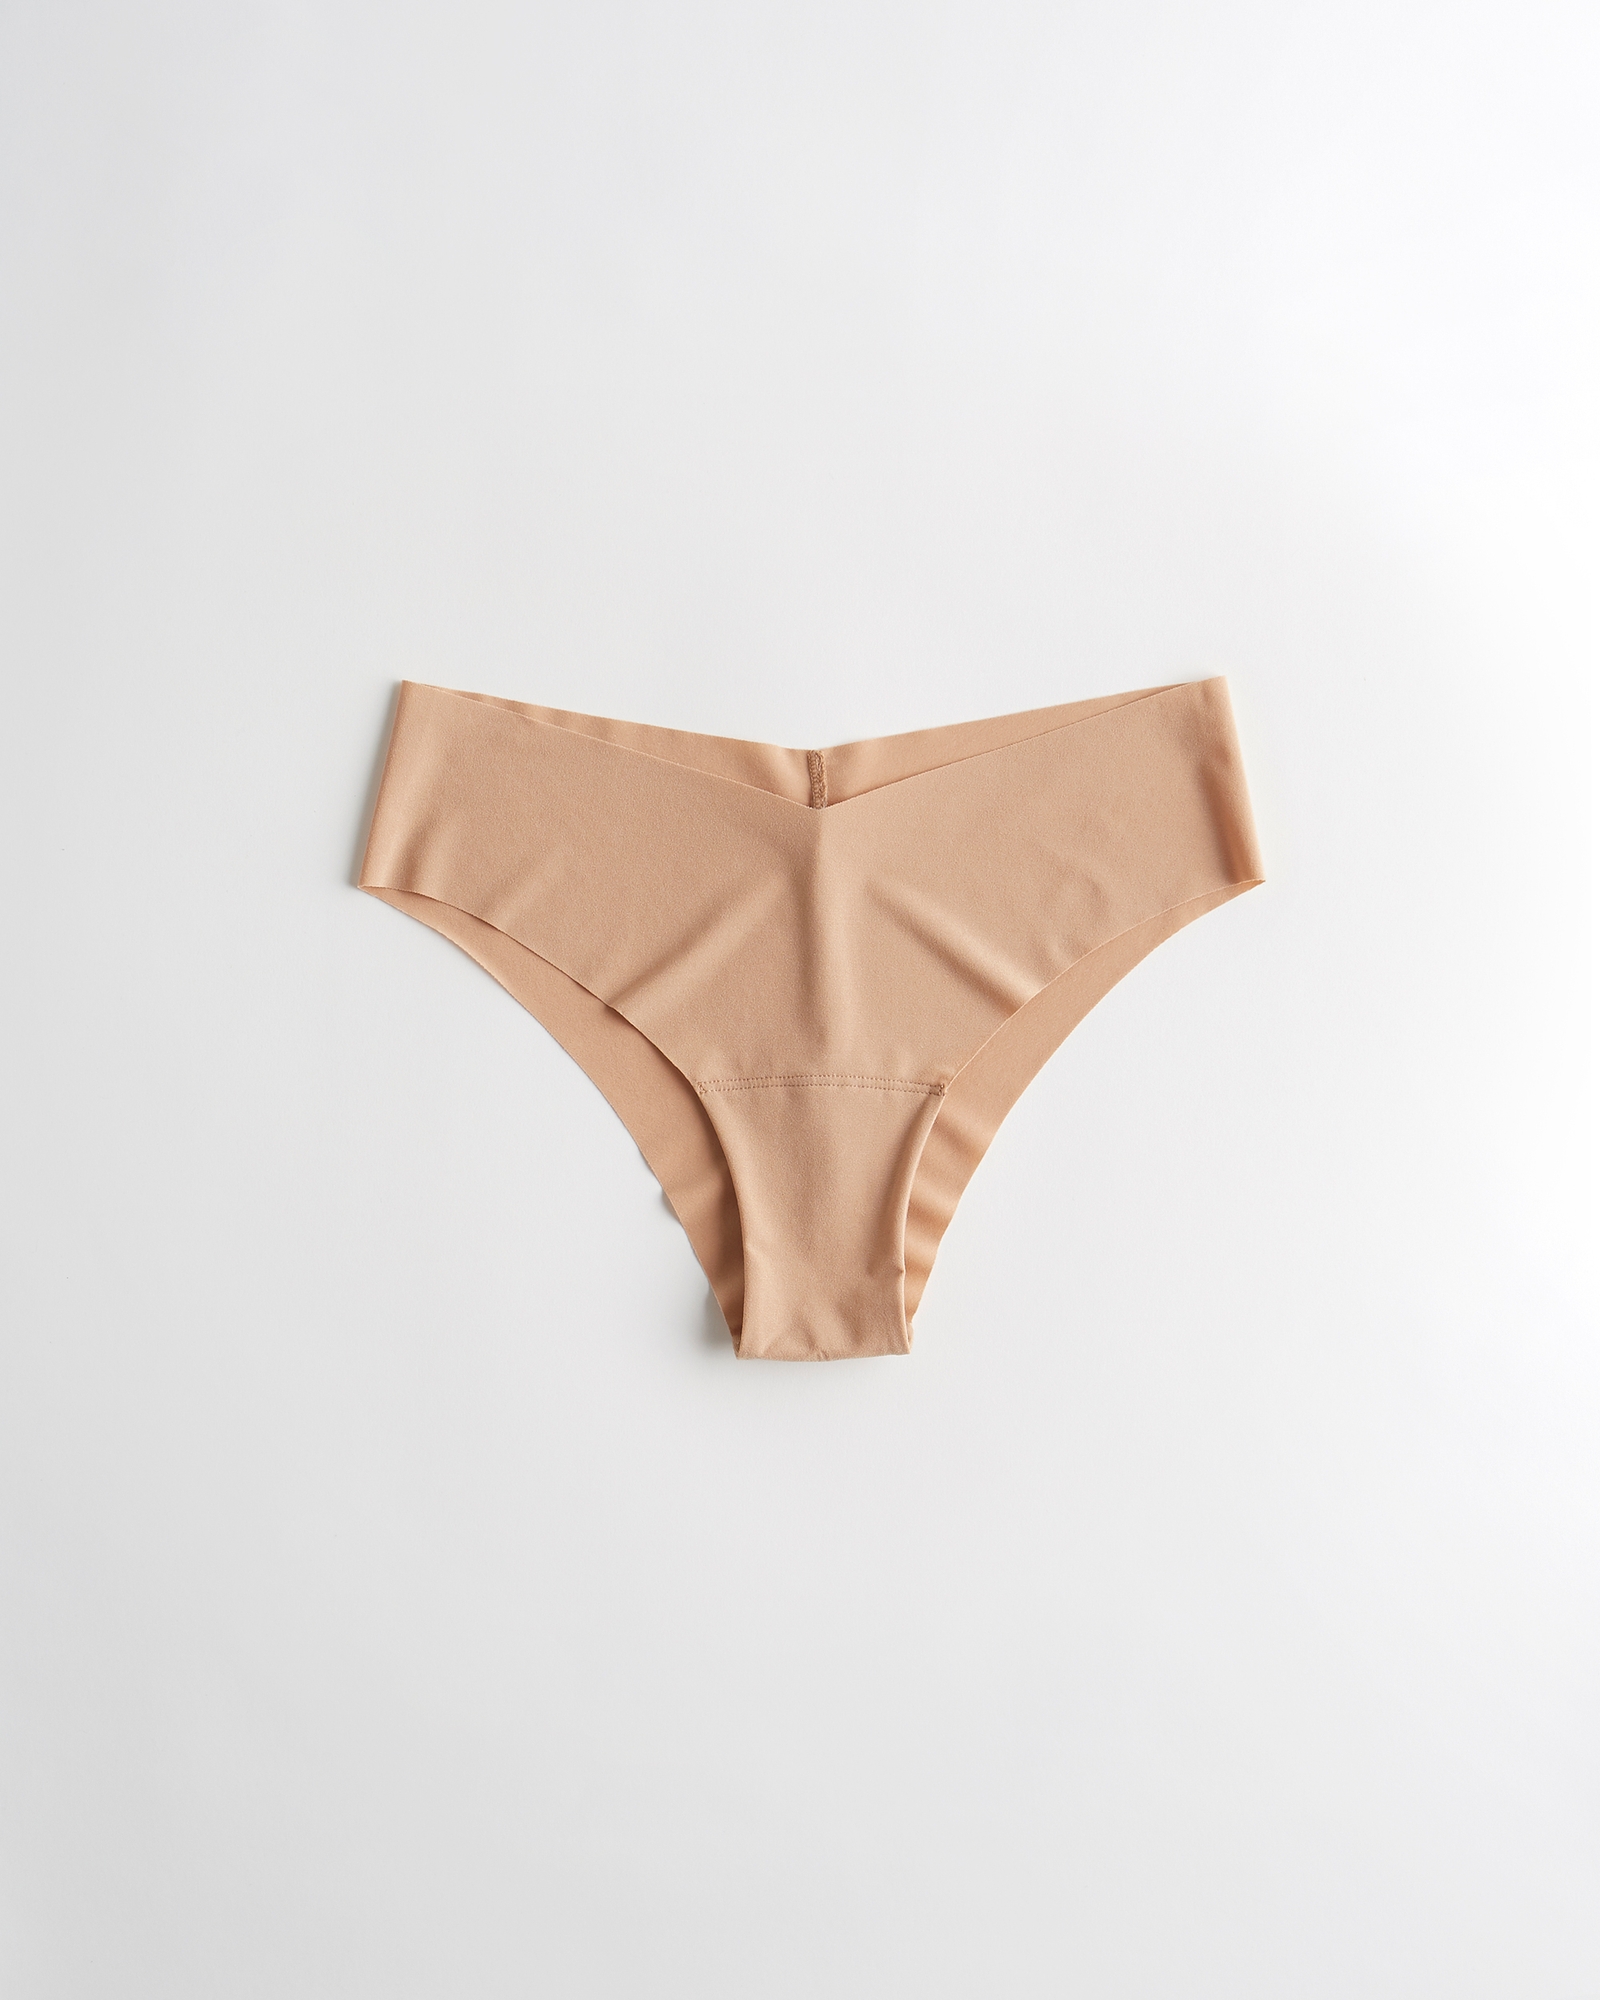 Women's Gilly Hicks No-Show Cheeky Underwear, Women's Bras & Underwear